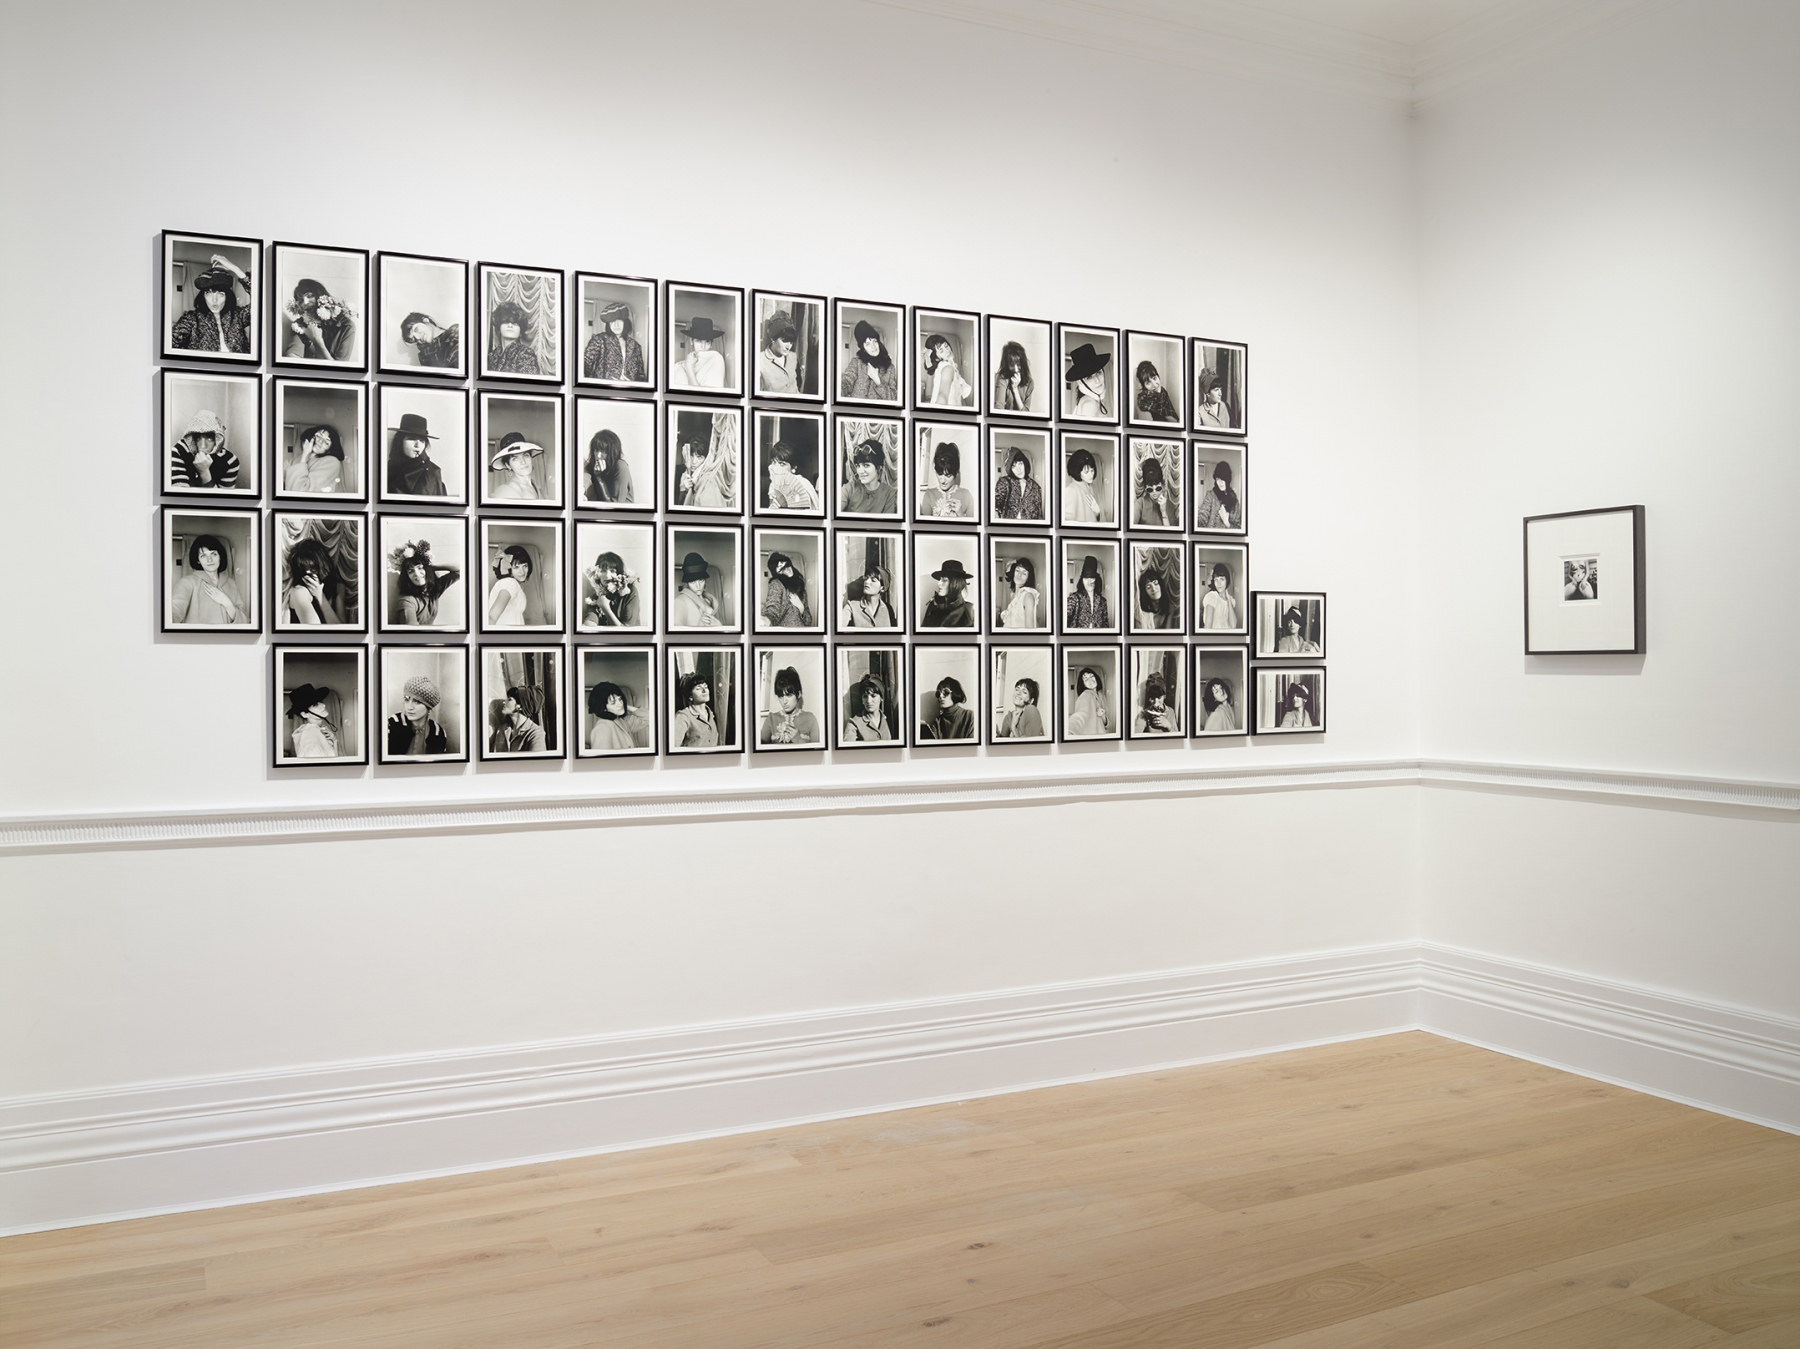 Installation view&nbsp;&lsquo;Women Look at Women&rsquo;,&nbsp;Richard Saltoun Gallery, London,&nbsp;2018.&nbsp;&copy;&nbsp;Renate Bertlmann; Courtesy of Richard Saltoun Gallery, London.&nbsp;